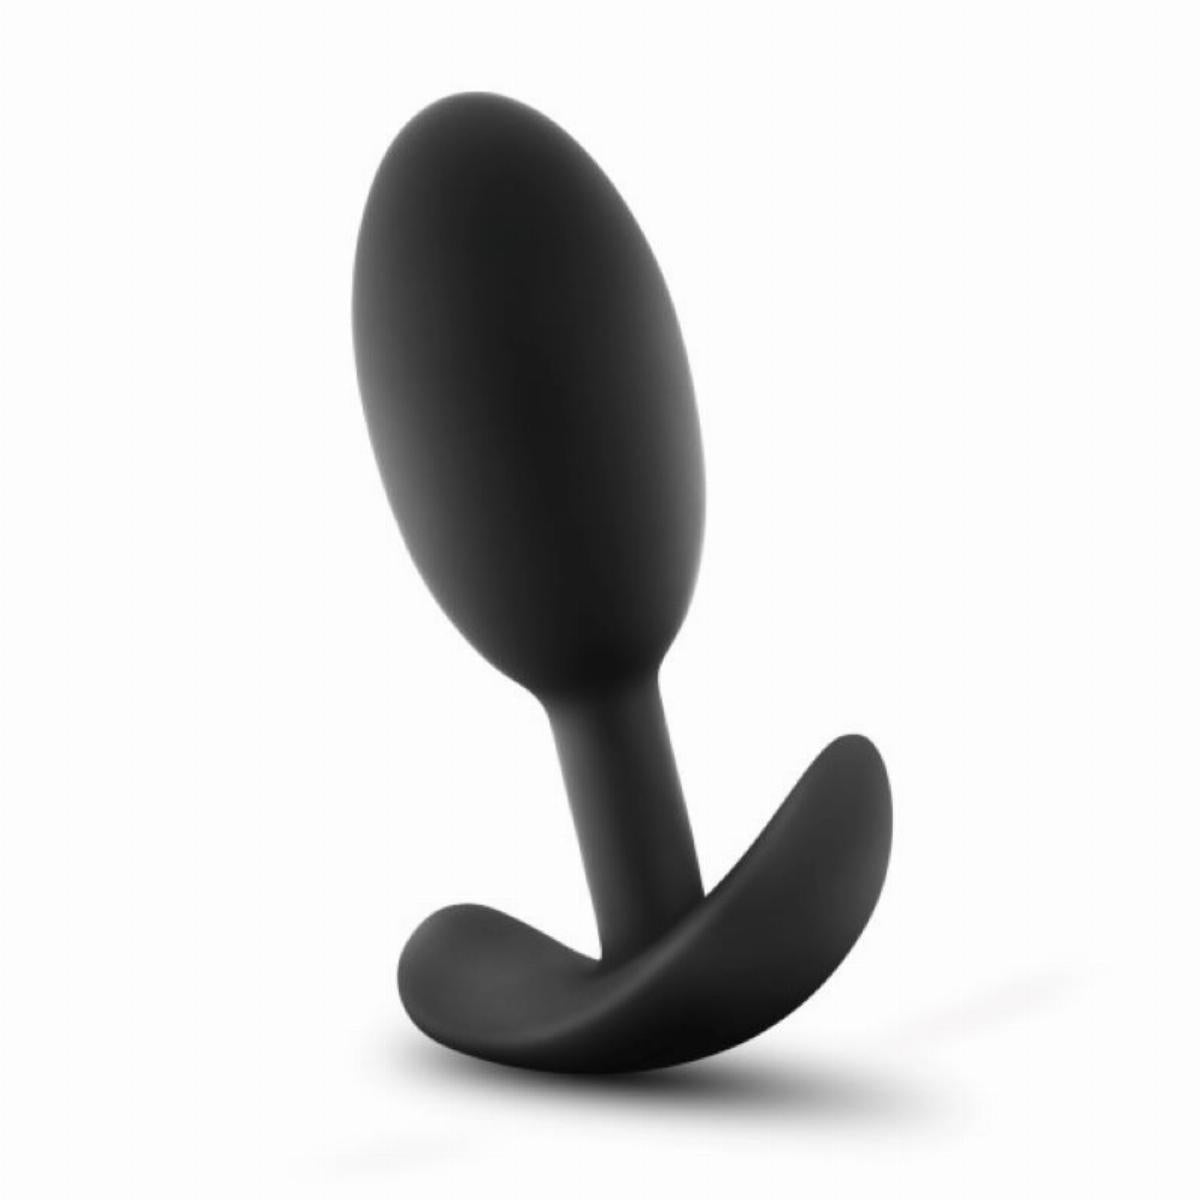 Zwarte Vibra Slim butt plug met binnenin een bal voor een unieke ervaring, gemaakt van siliconen en is van Anal Adventures. Deze butt plug is te koop bij Flavourez.